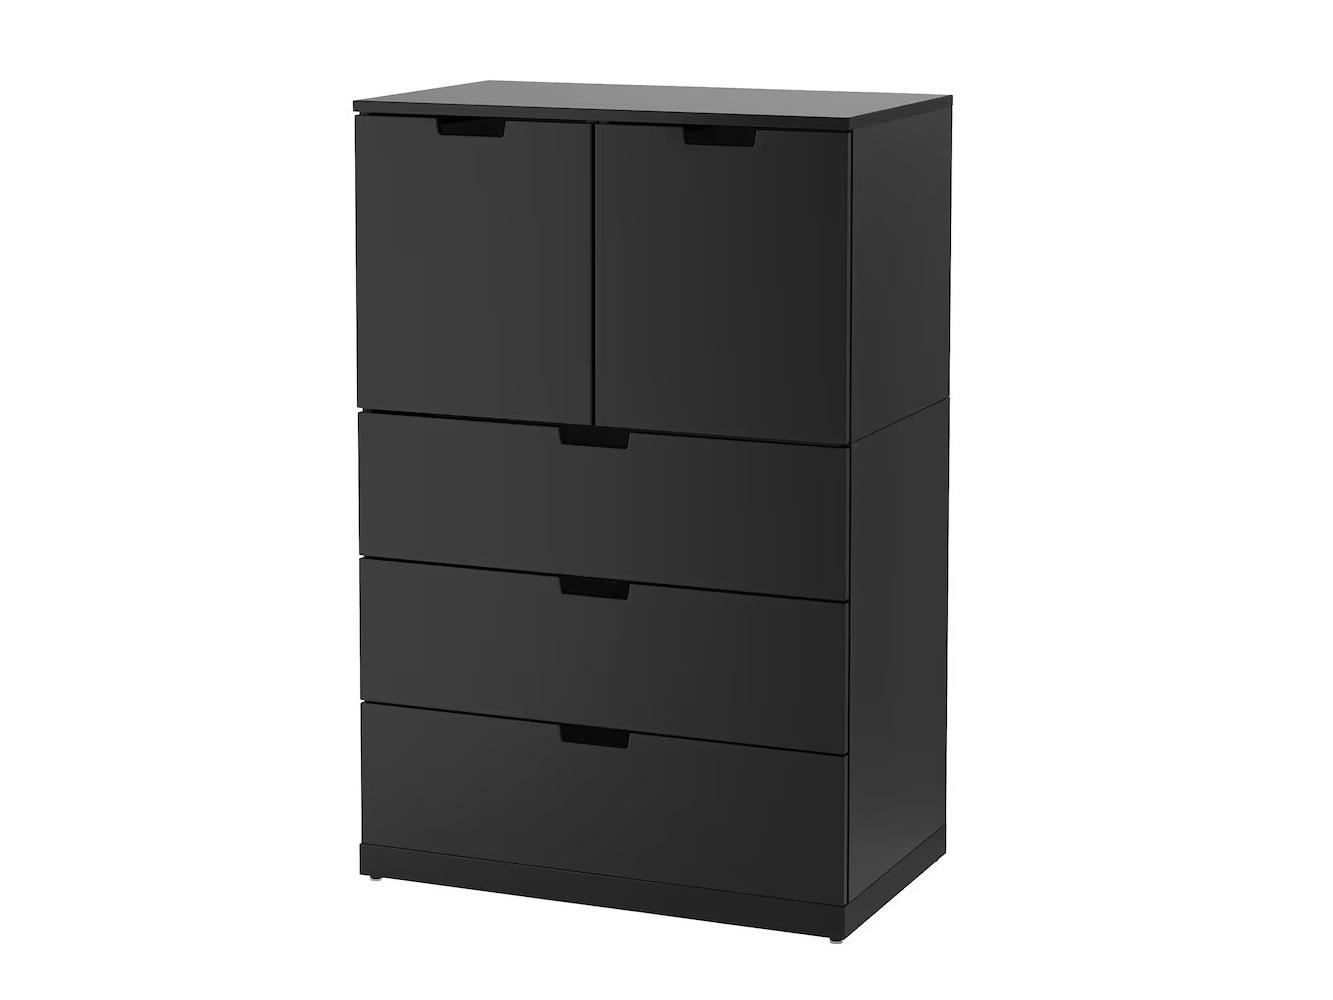 Комод Нордли 40 black ИКЕА (IKEA) изображение товара